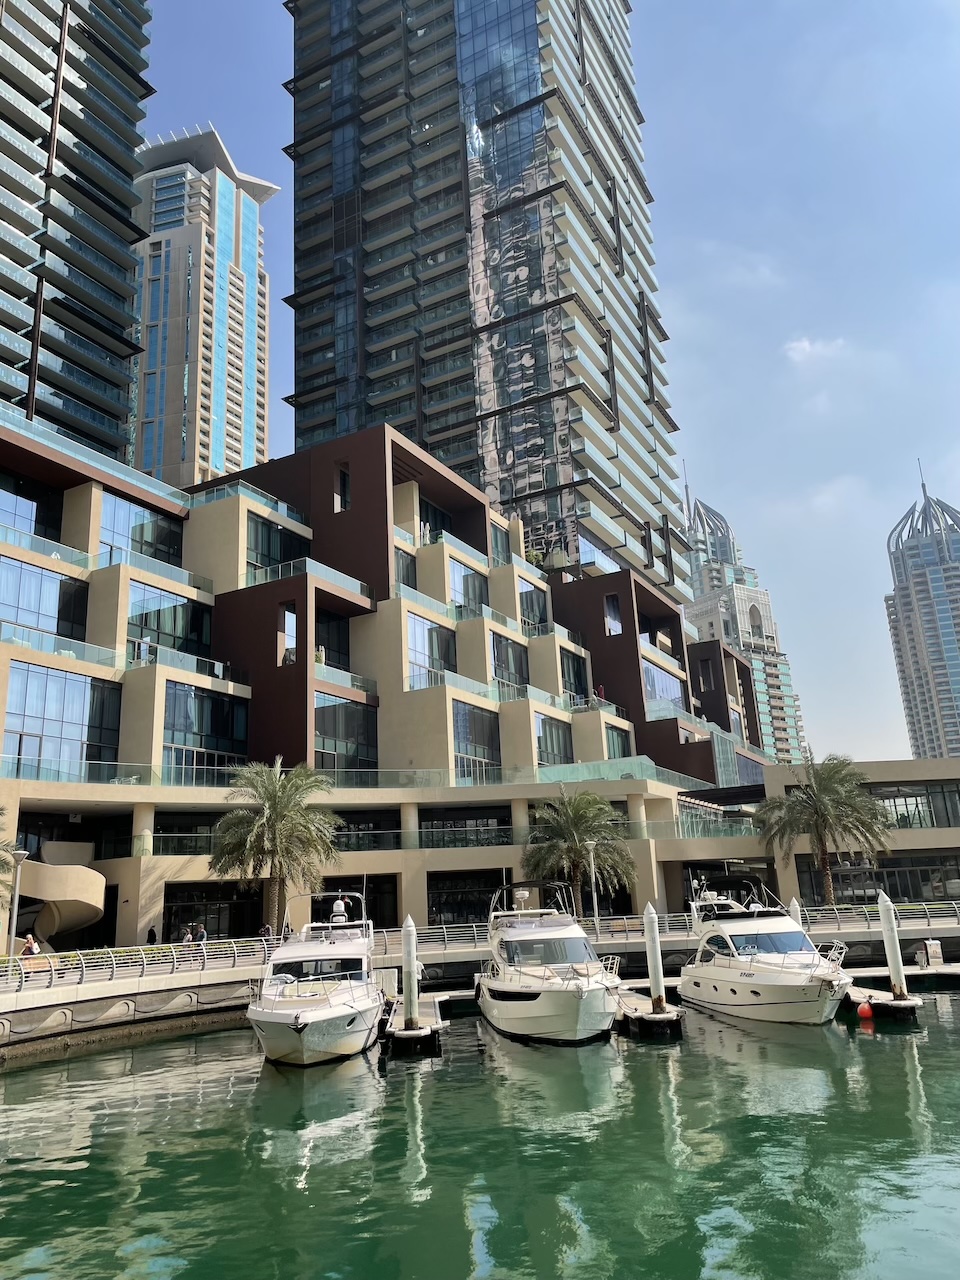 Location de yachts à la Marina de Dubaï : Un voyage baigné de luxe